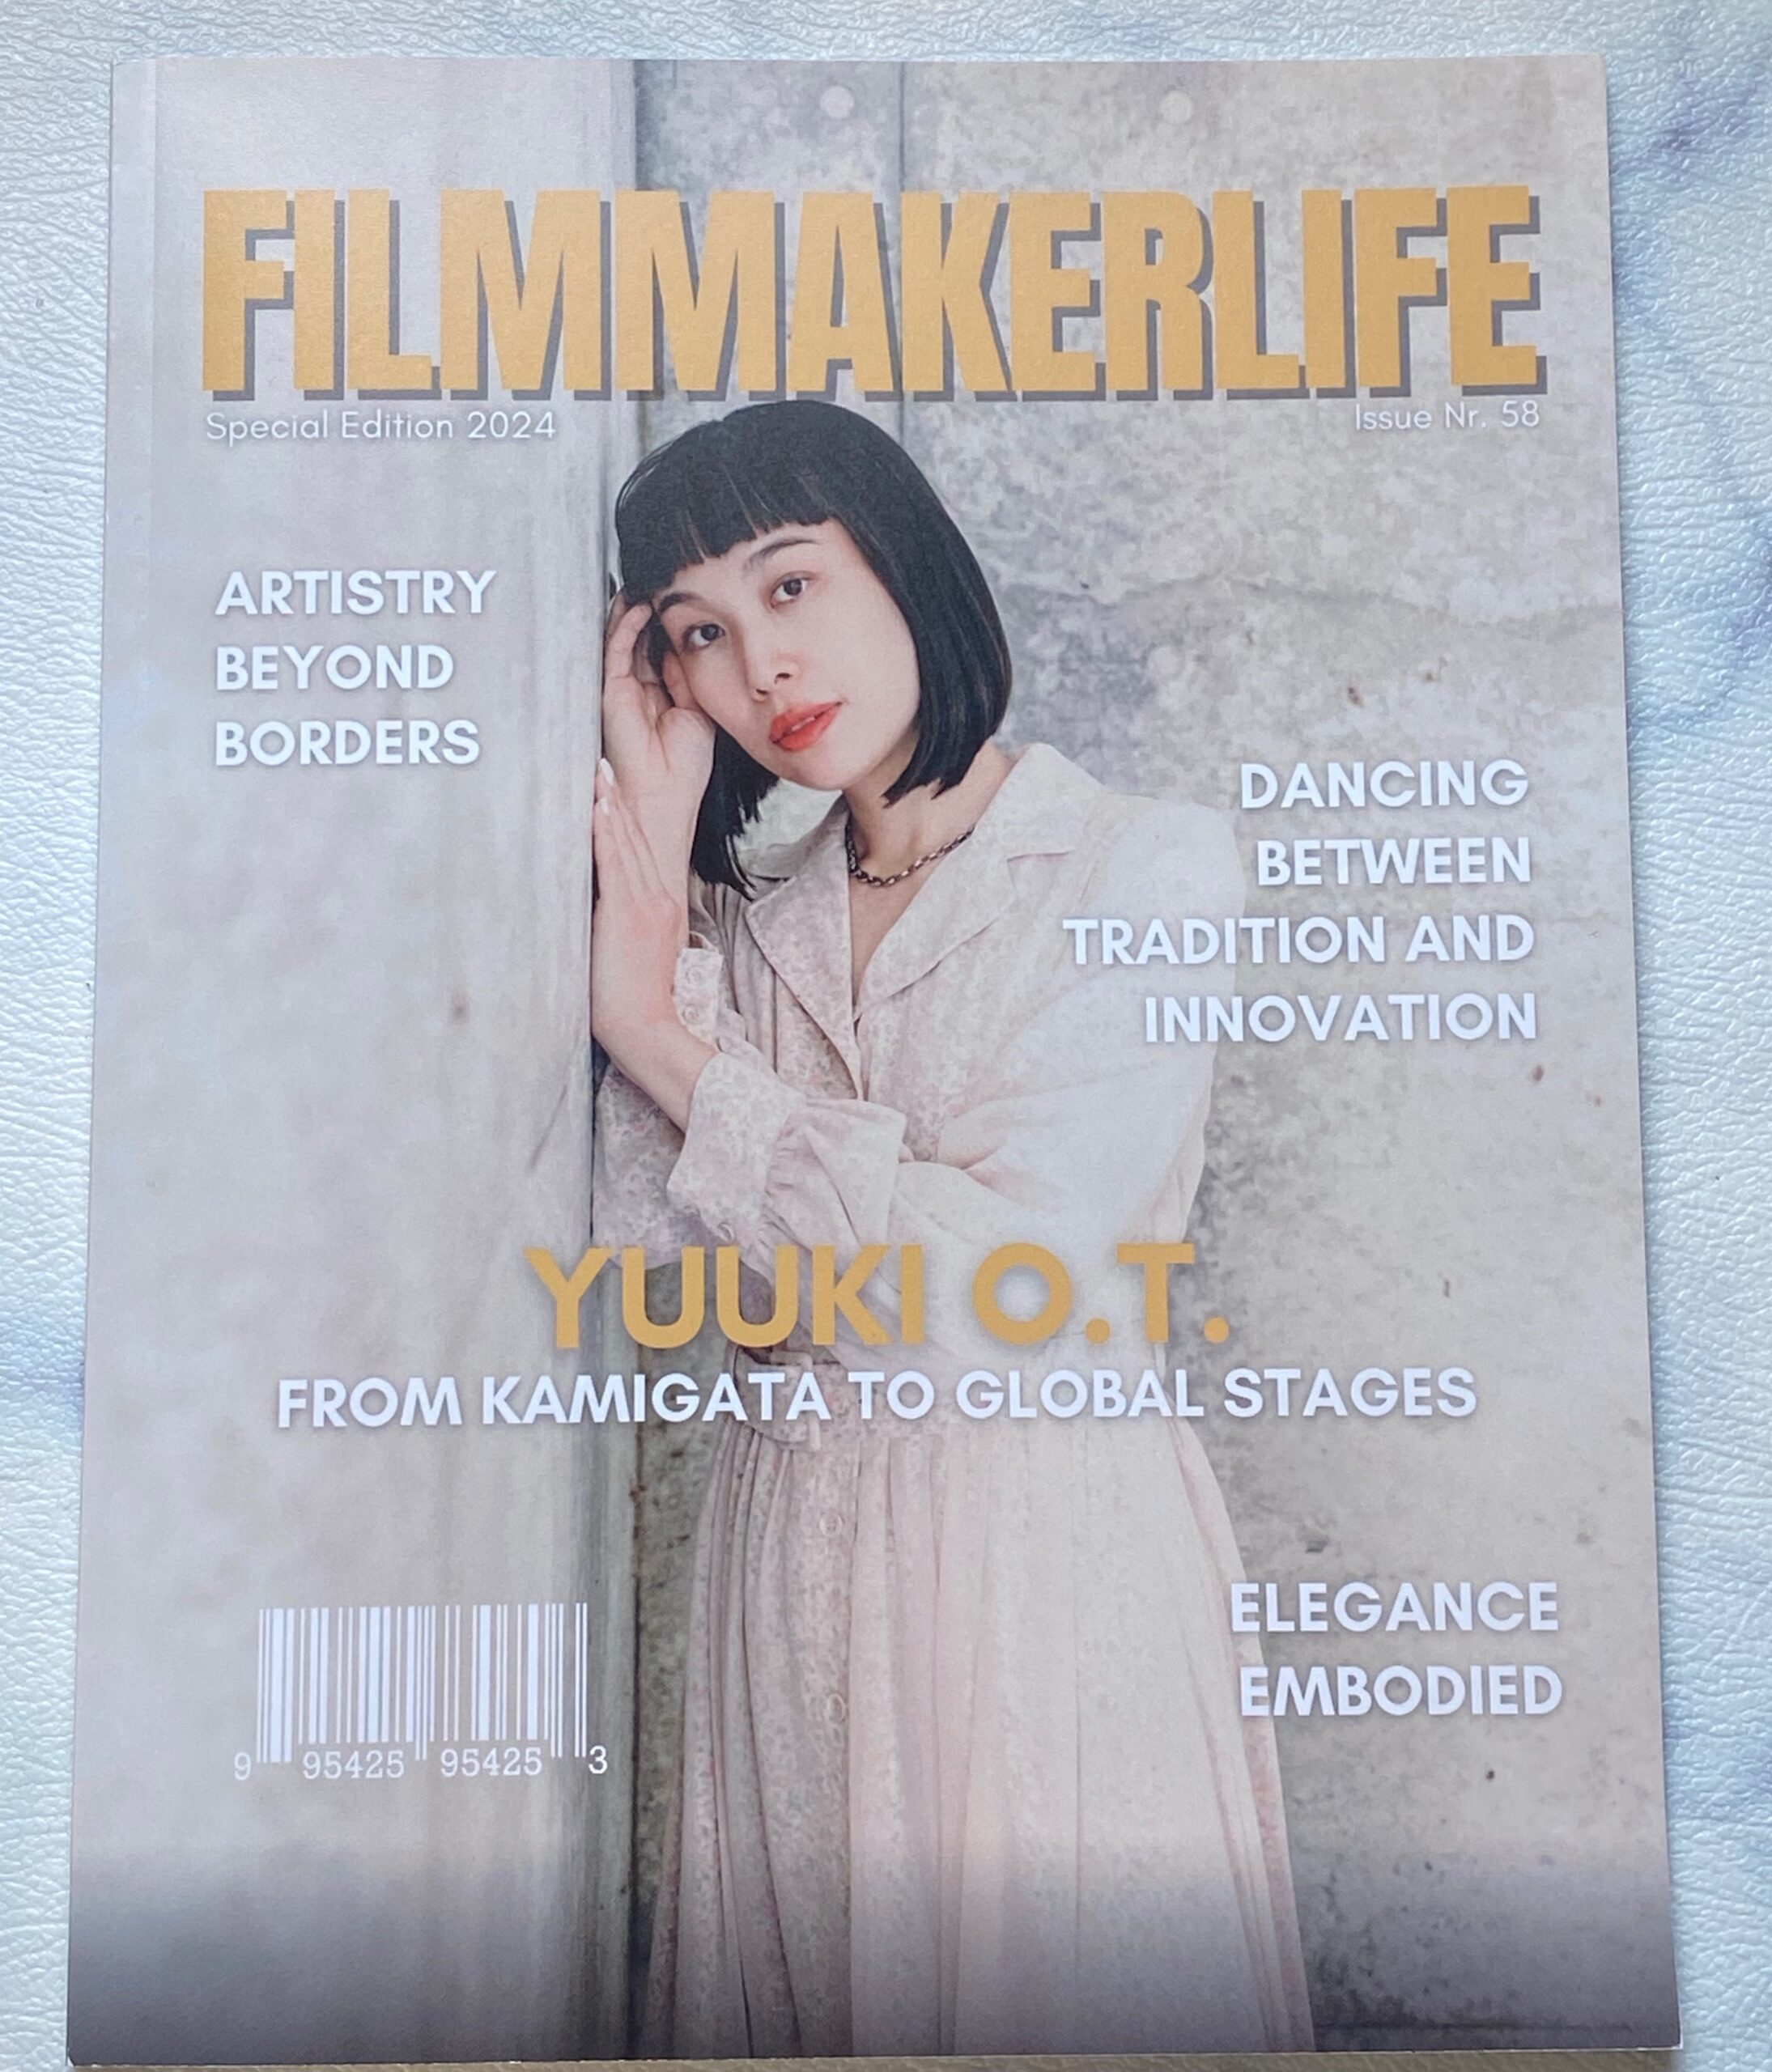 filmmakerlife magazine